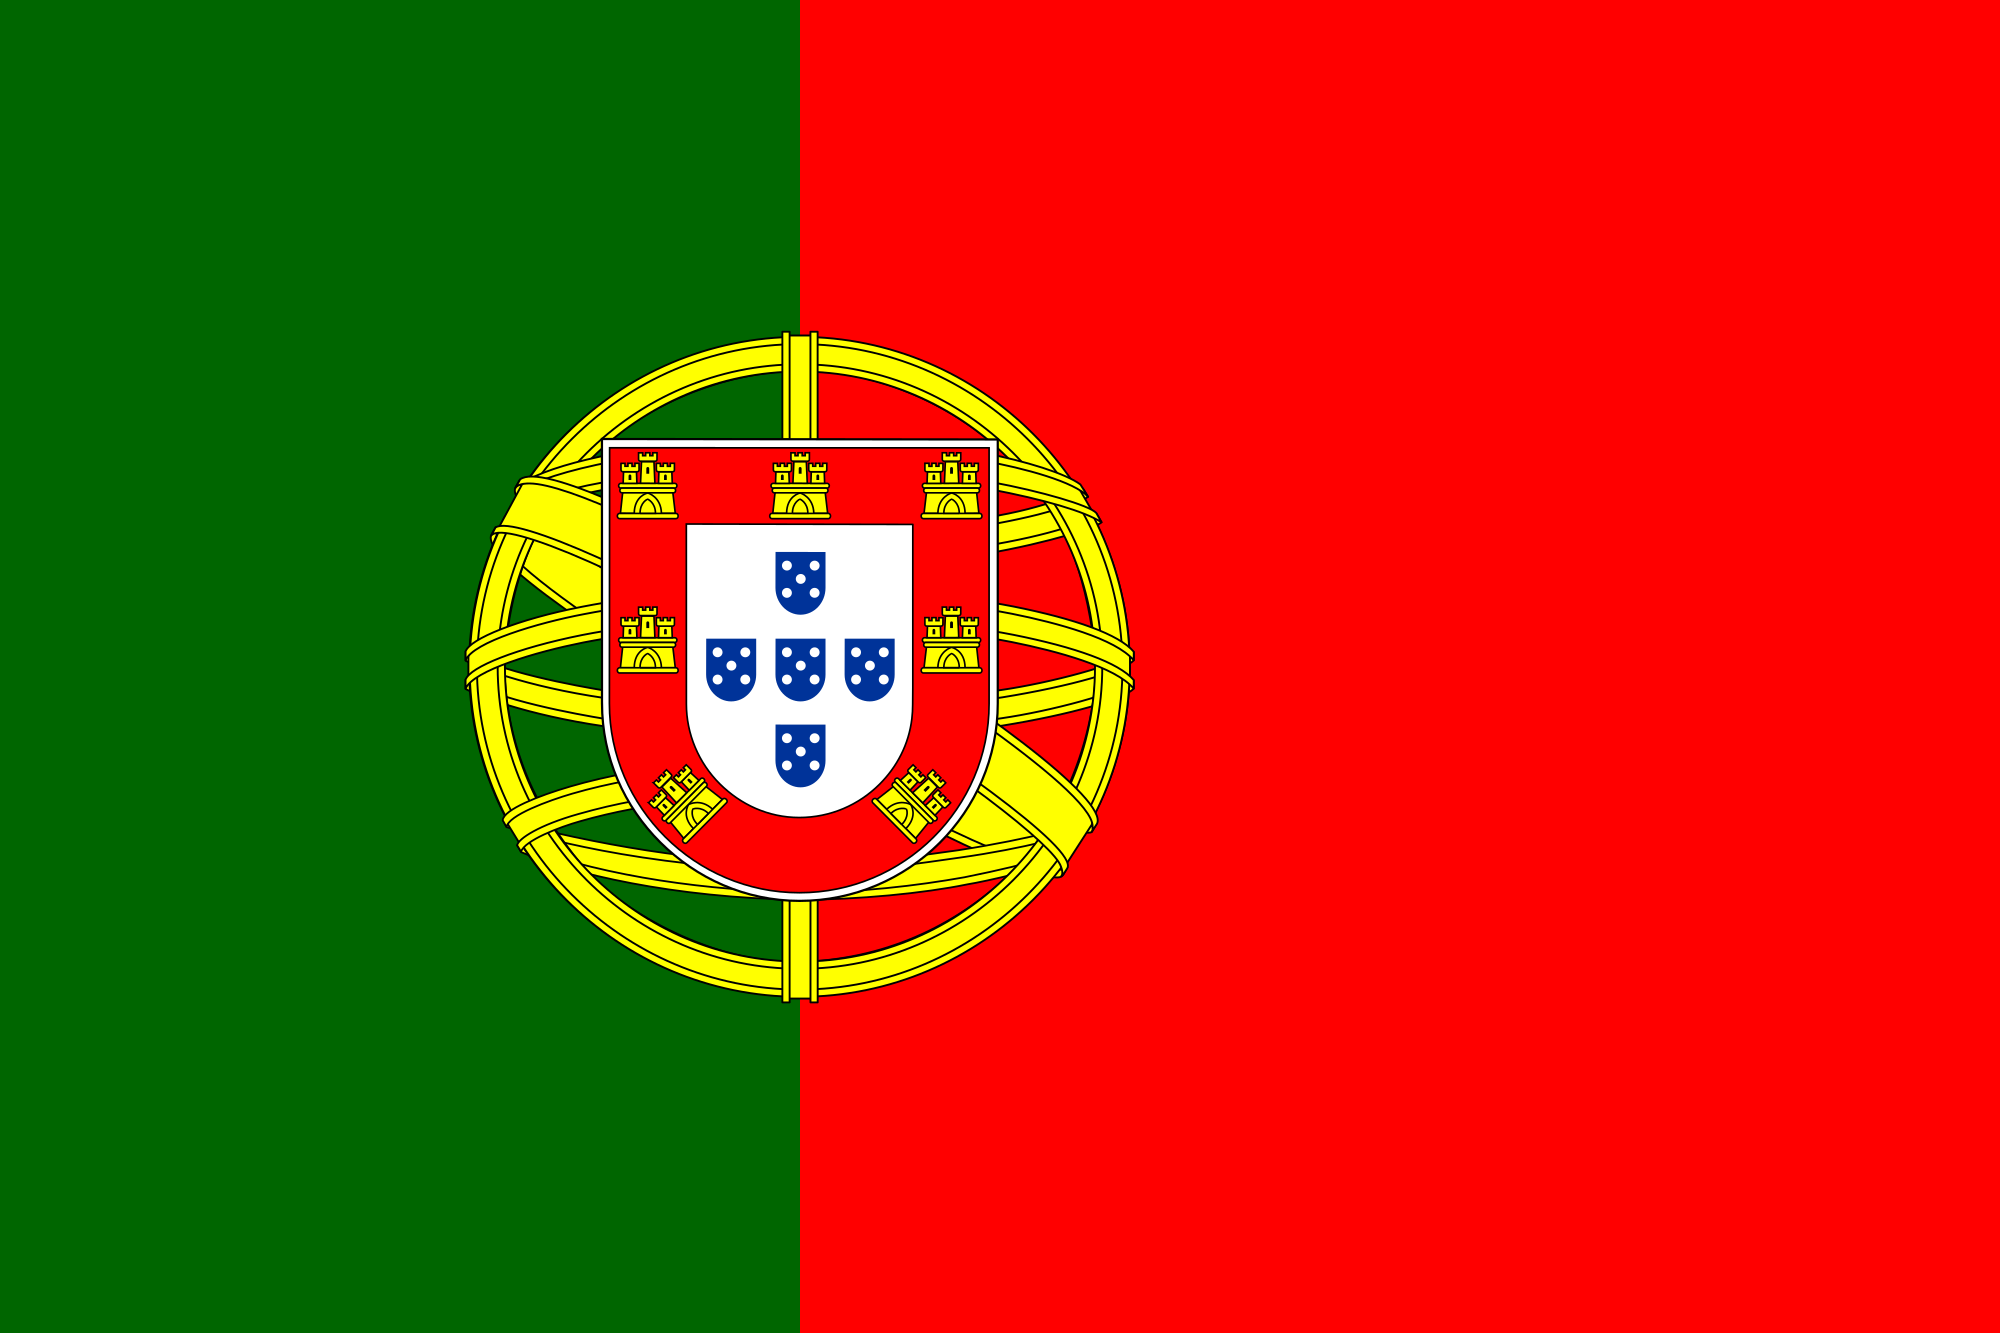 Bandiera del Portogallo - Wikipedia